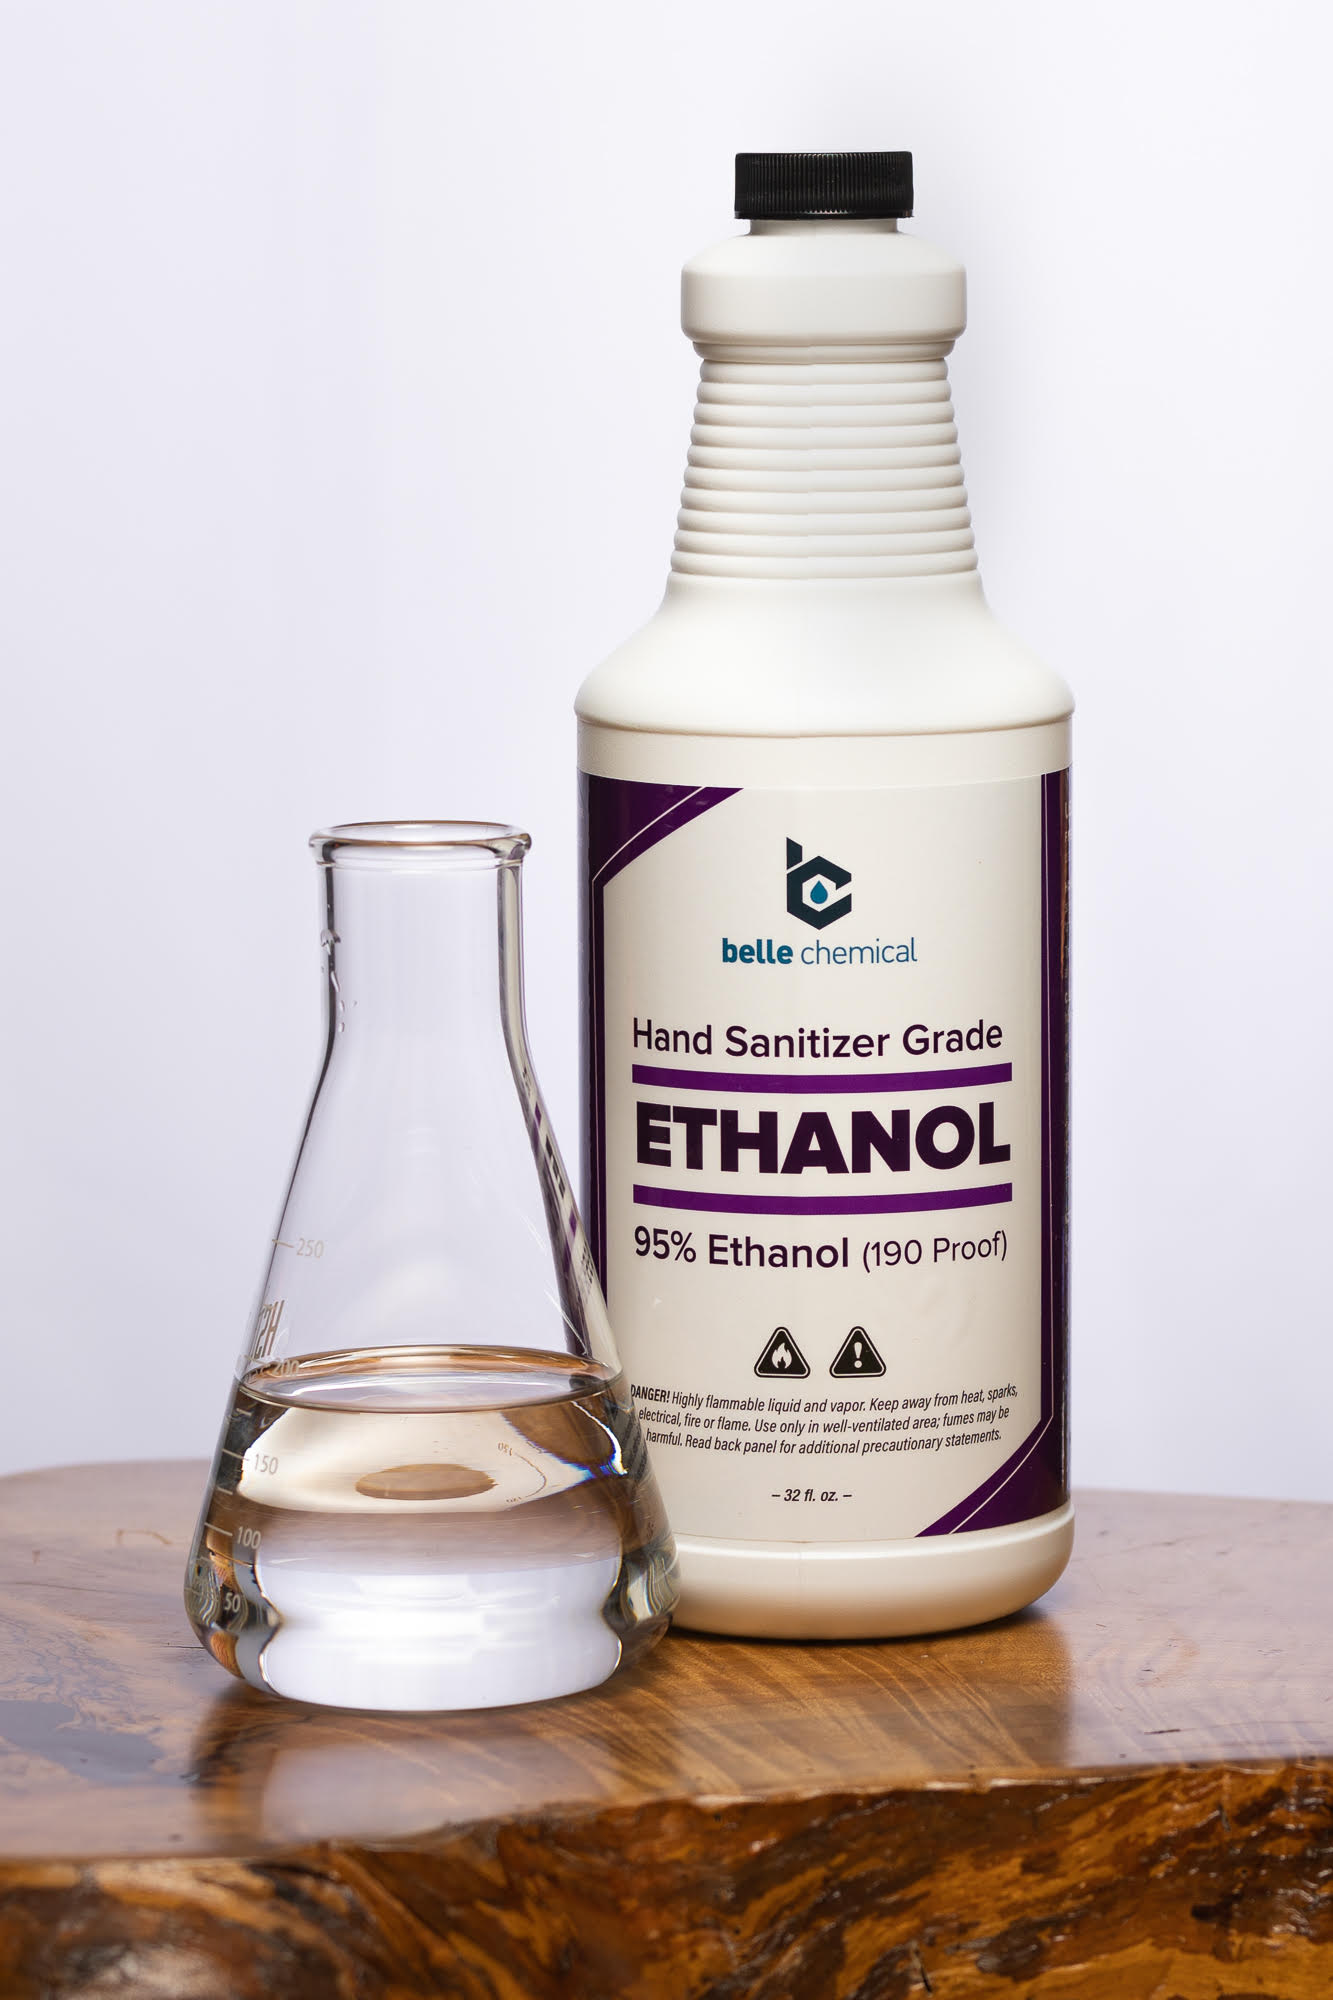 Belle-Chemical-Hand-Sanitizer-Grade-Ethanol-95-Ethanol-190-Proof.jpg